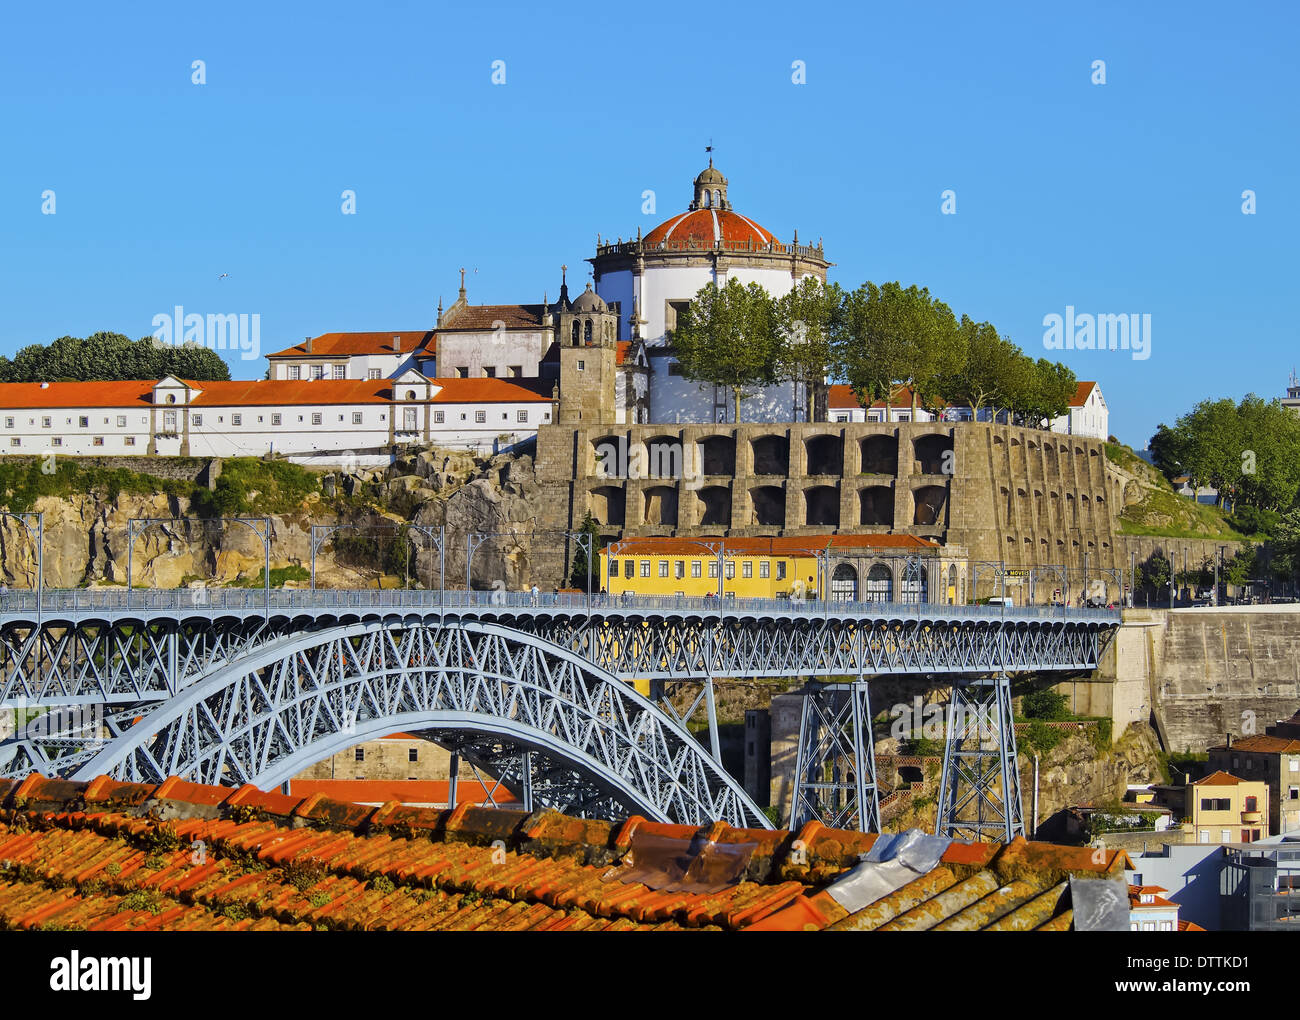 Mosteiro Sierra do Pilar - Monastery in Porto, Portugal Stock Photo